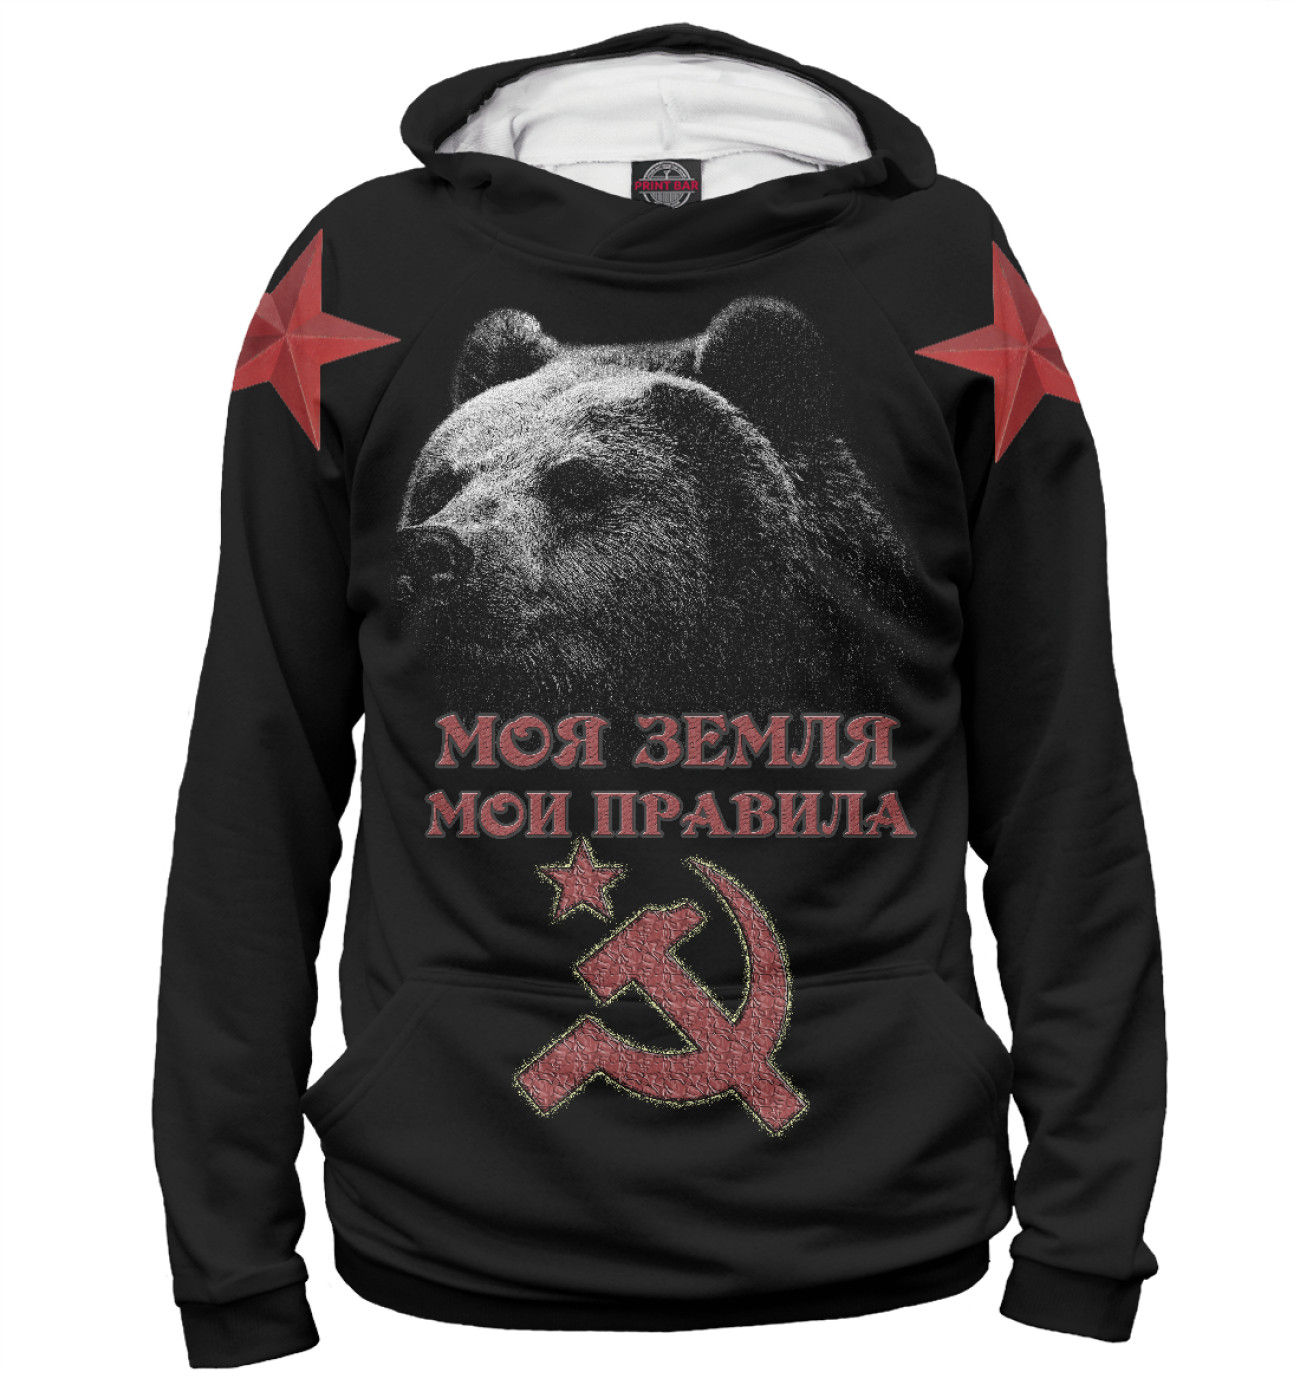 Мужское Худи Суровый Медведь из СССР, артикул: SSS-967798-hud-2